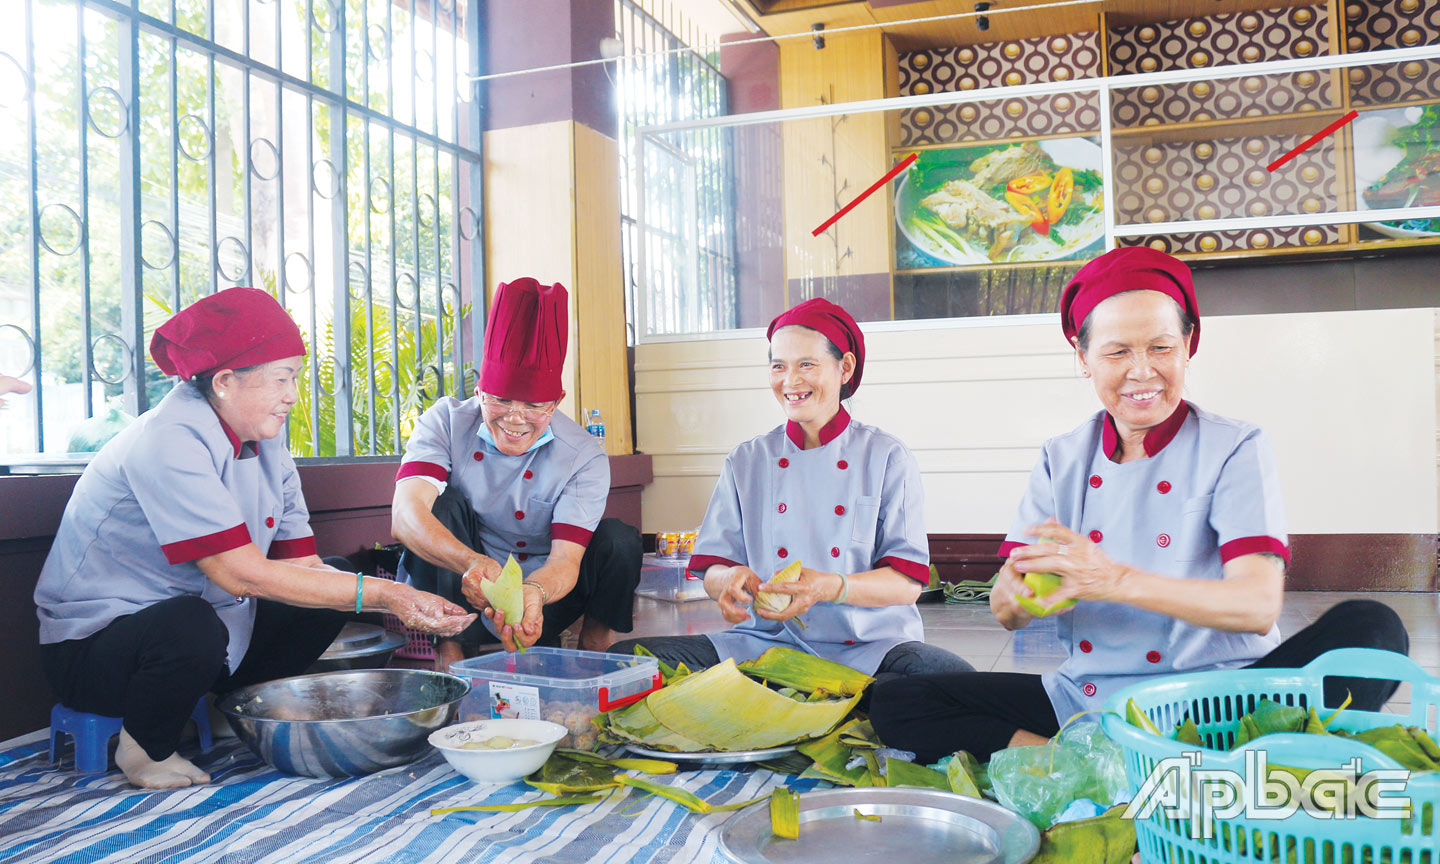 Hội thi gói, nấu bánh ít truyền thống là hoạt động thường xuyên tại Bảo tàng tỉnh trong dịp Giỗ Tổ Hùng Vương.